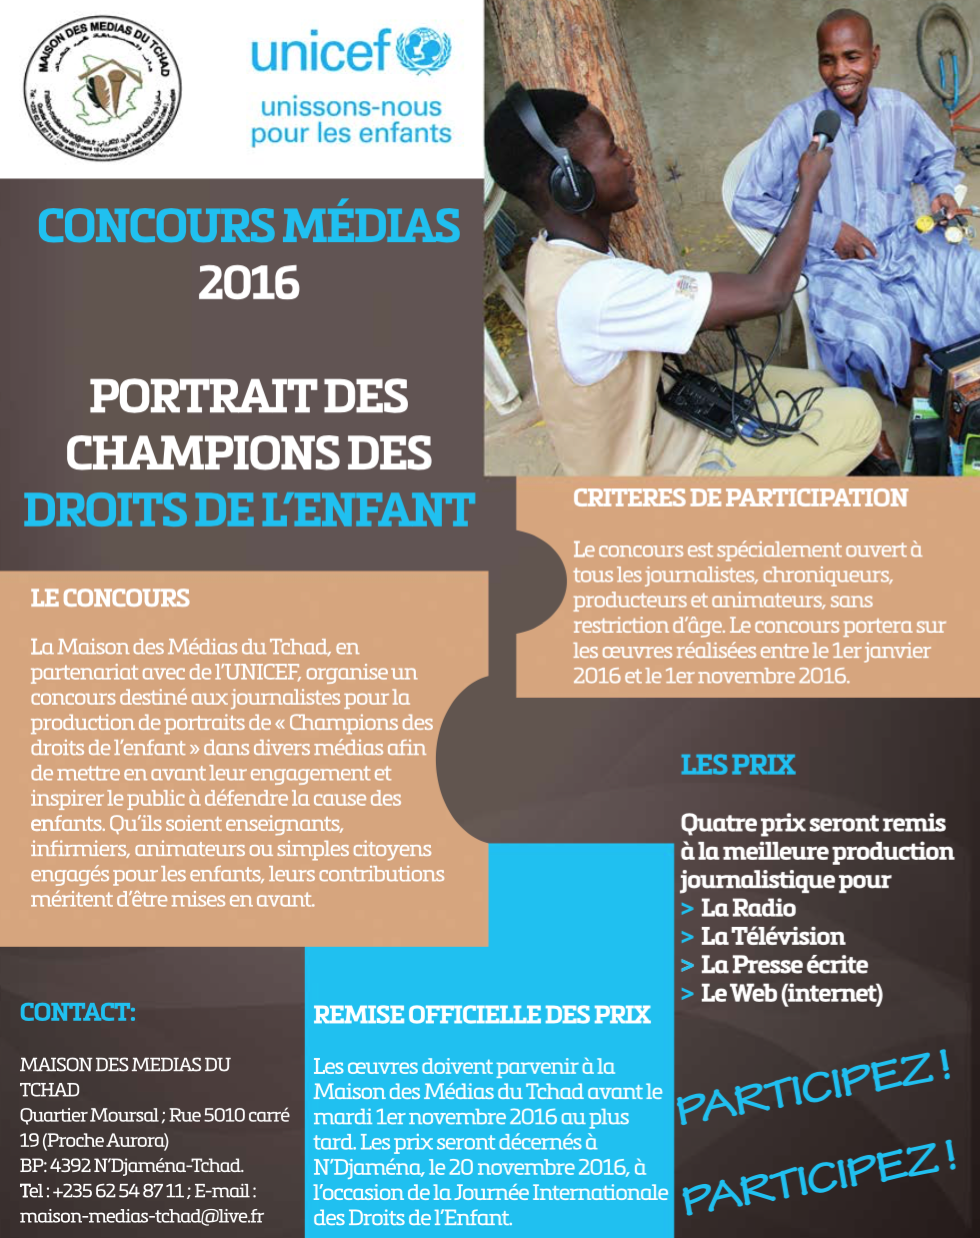 Concours Média 2016 : portrait des champions des droits de l’enfant